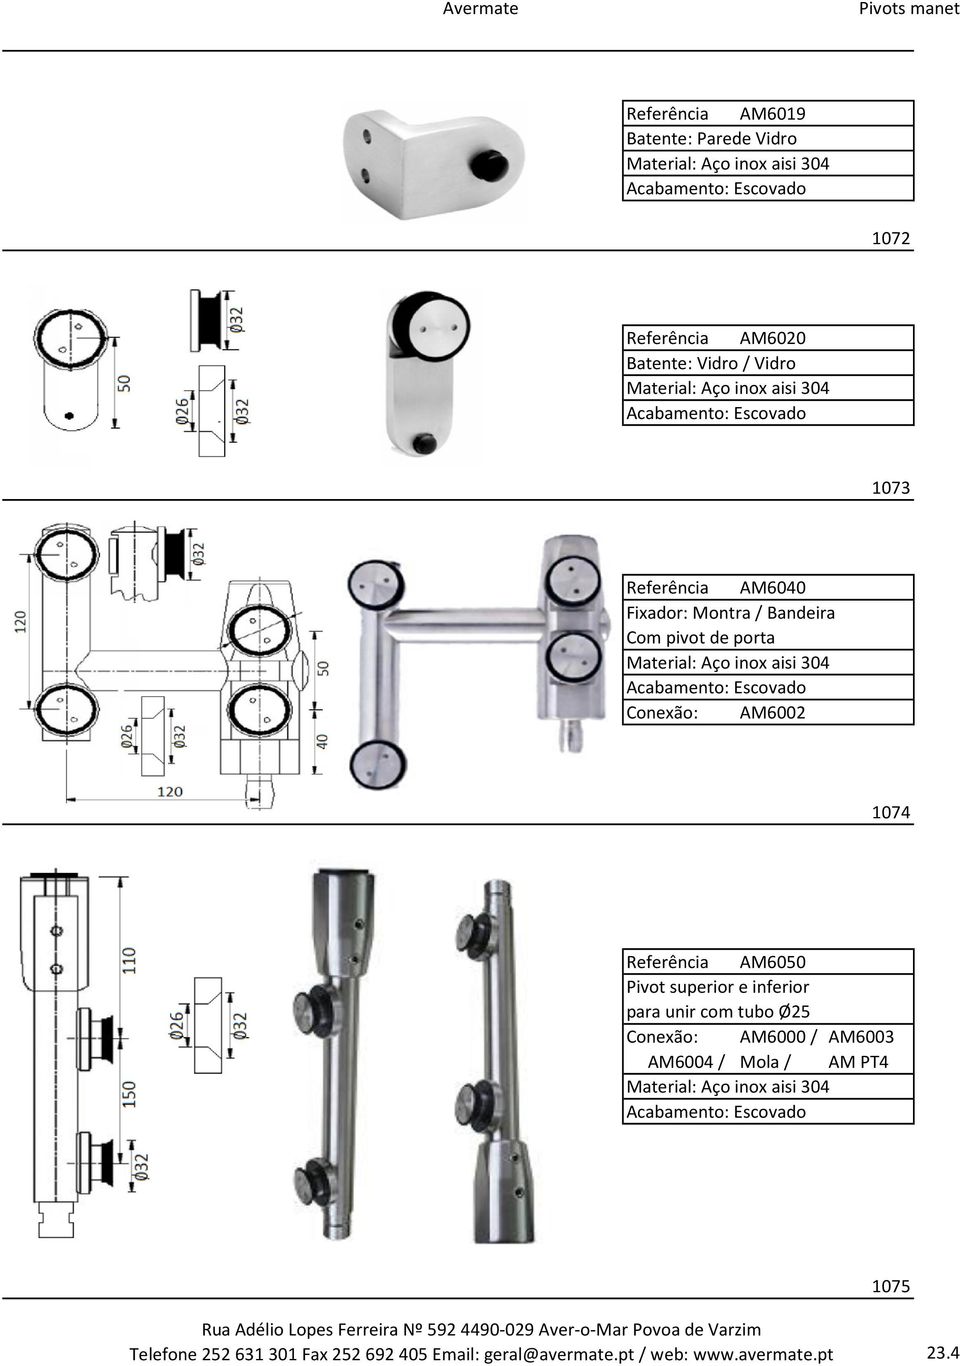 superior e inferior para unir com tubo Ø25 Conexão: AM6000 / AM6003 AM6004 / Mola / AM PT4